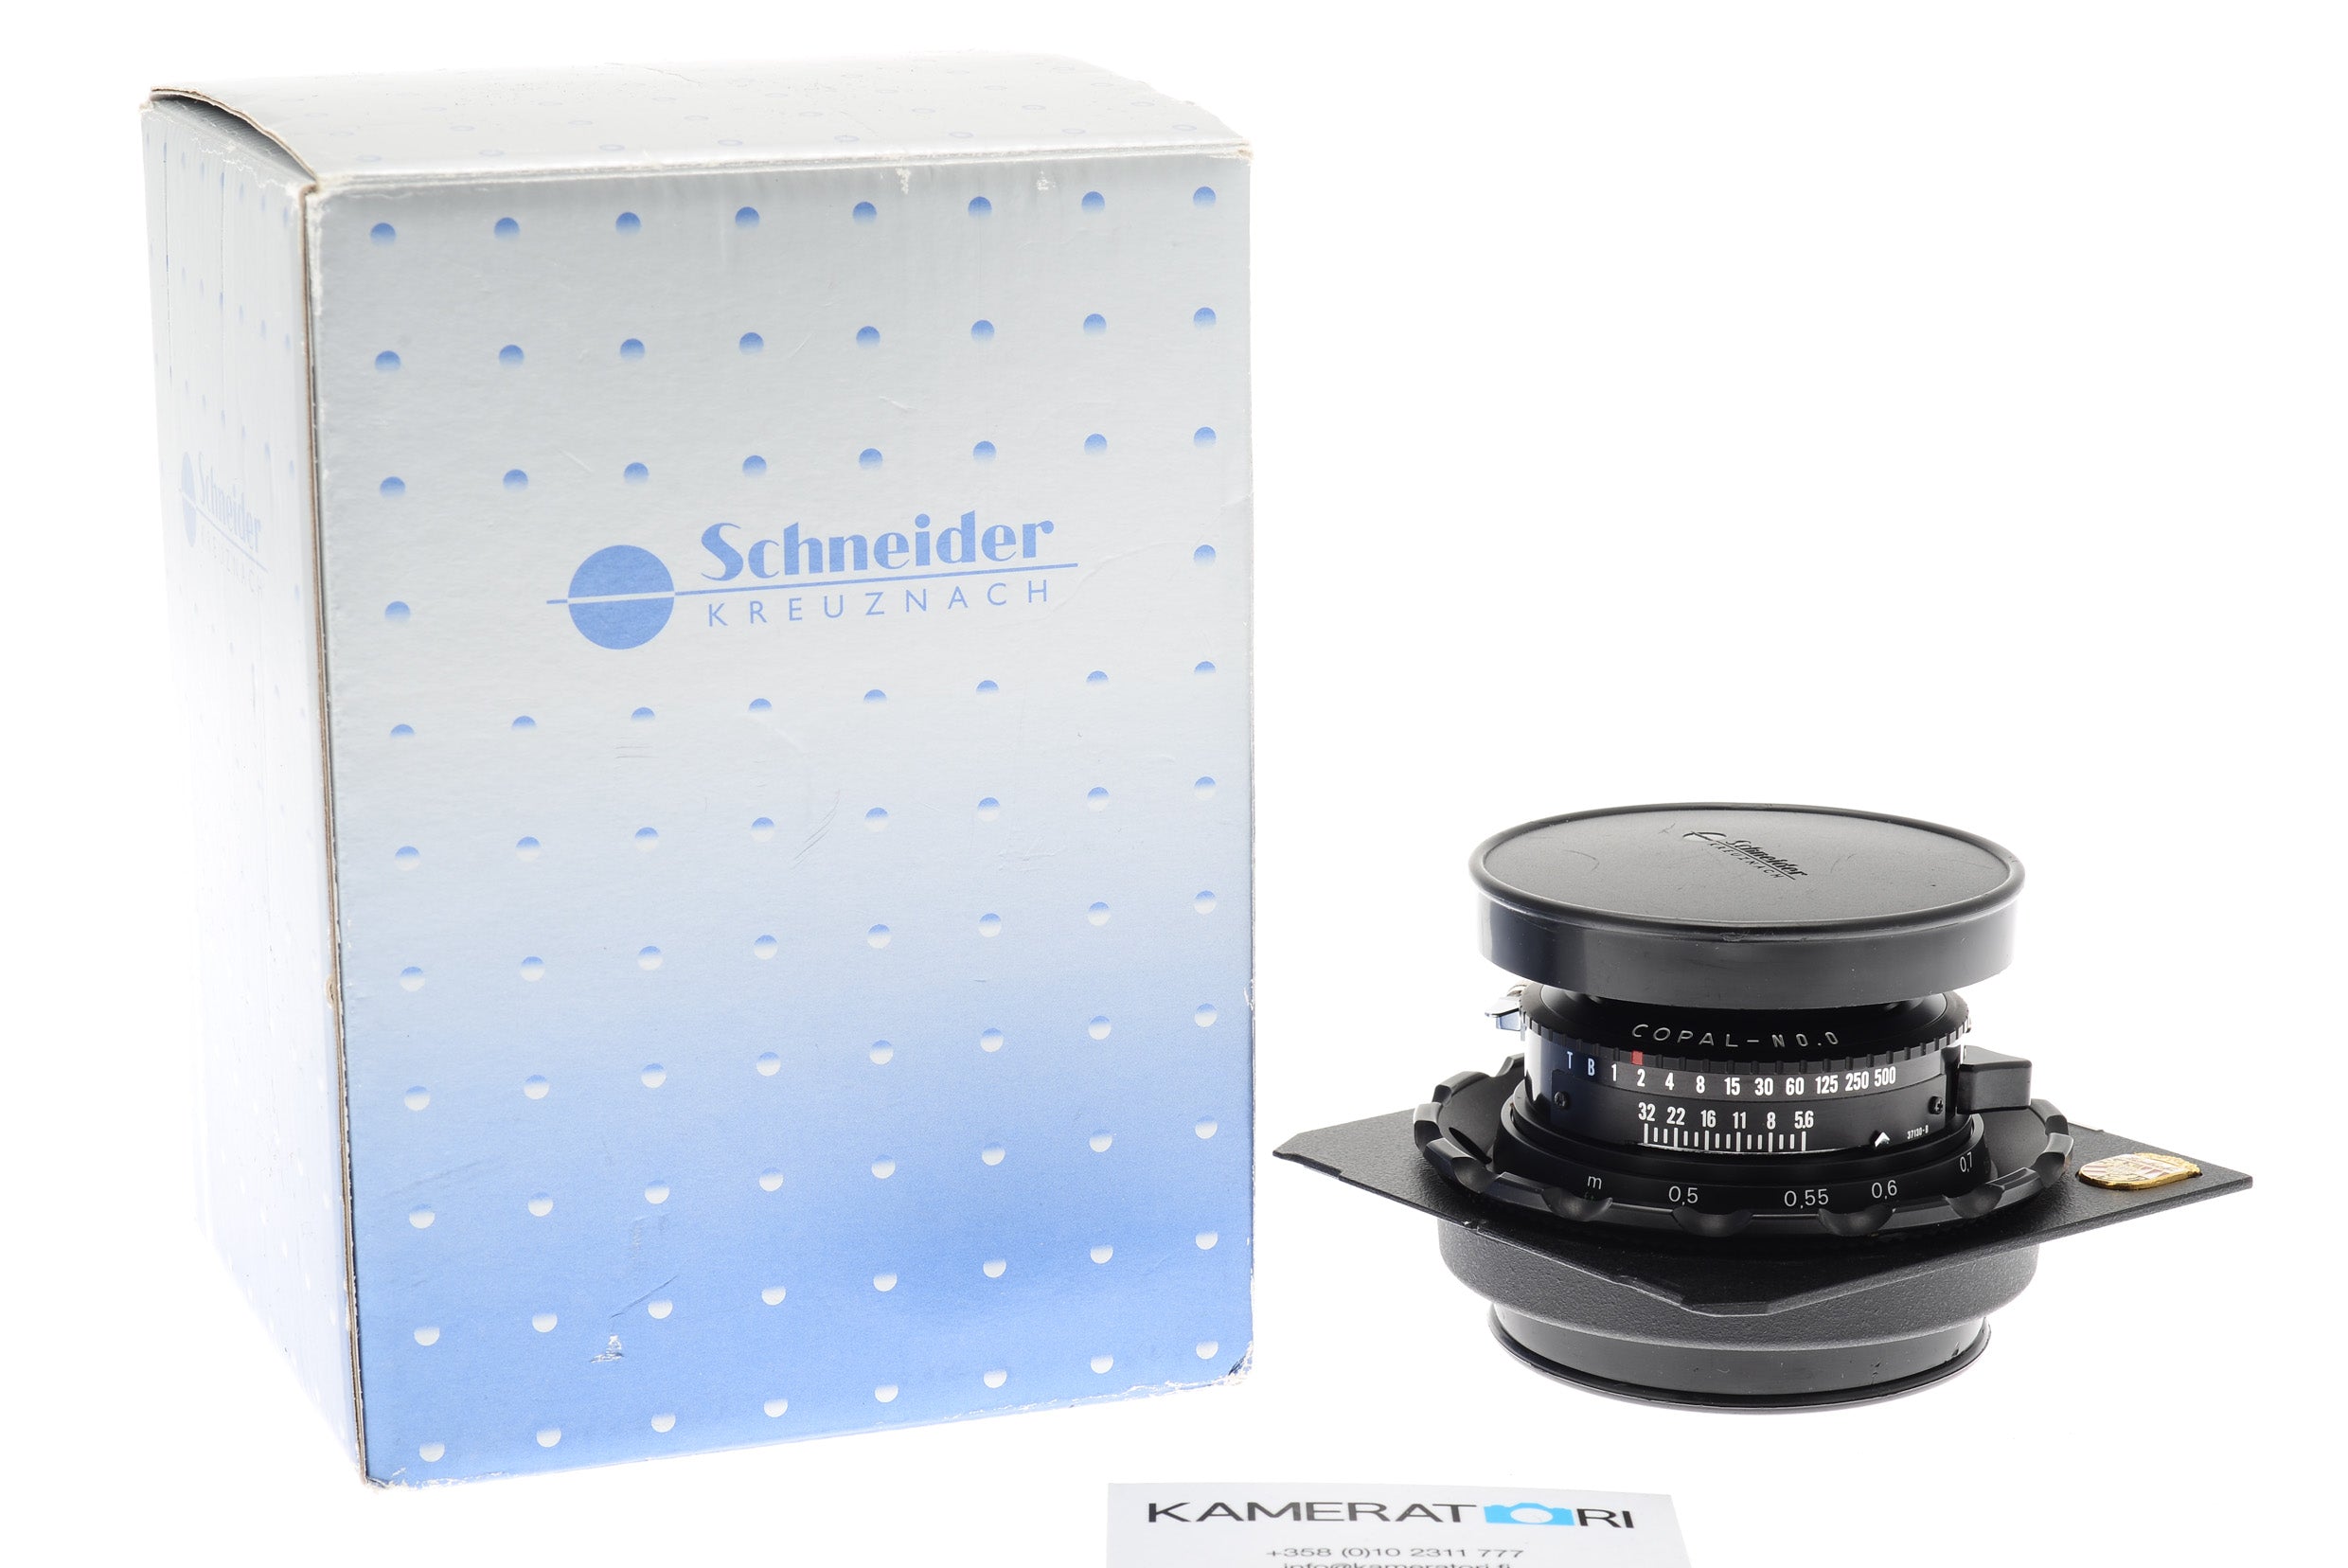 Schneider-Kreuznach 47mm f5.6 Super-Angulon XL (Shutter) - Lens